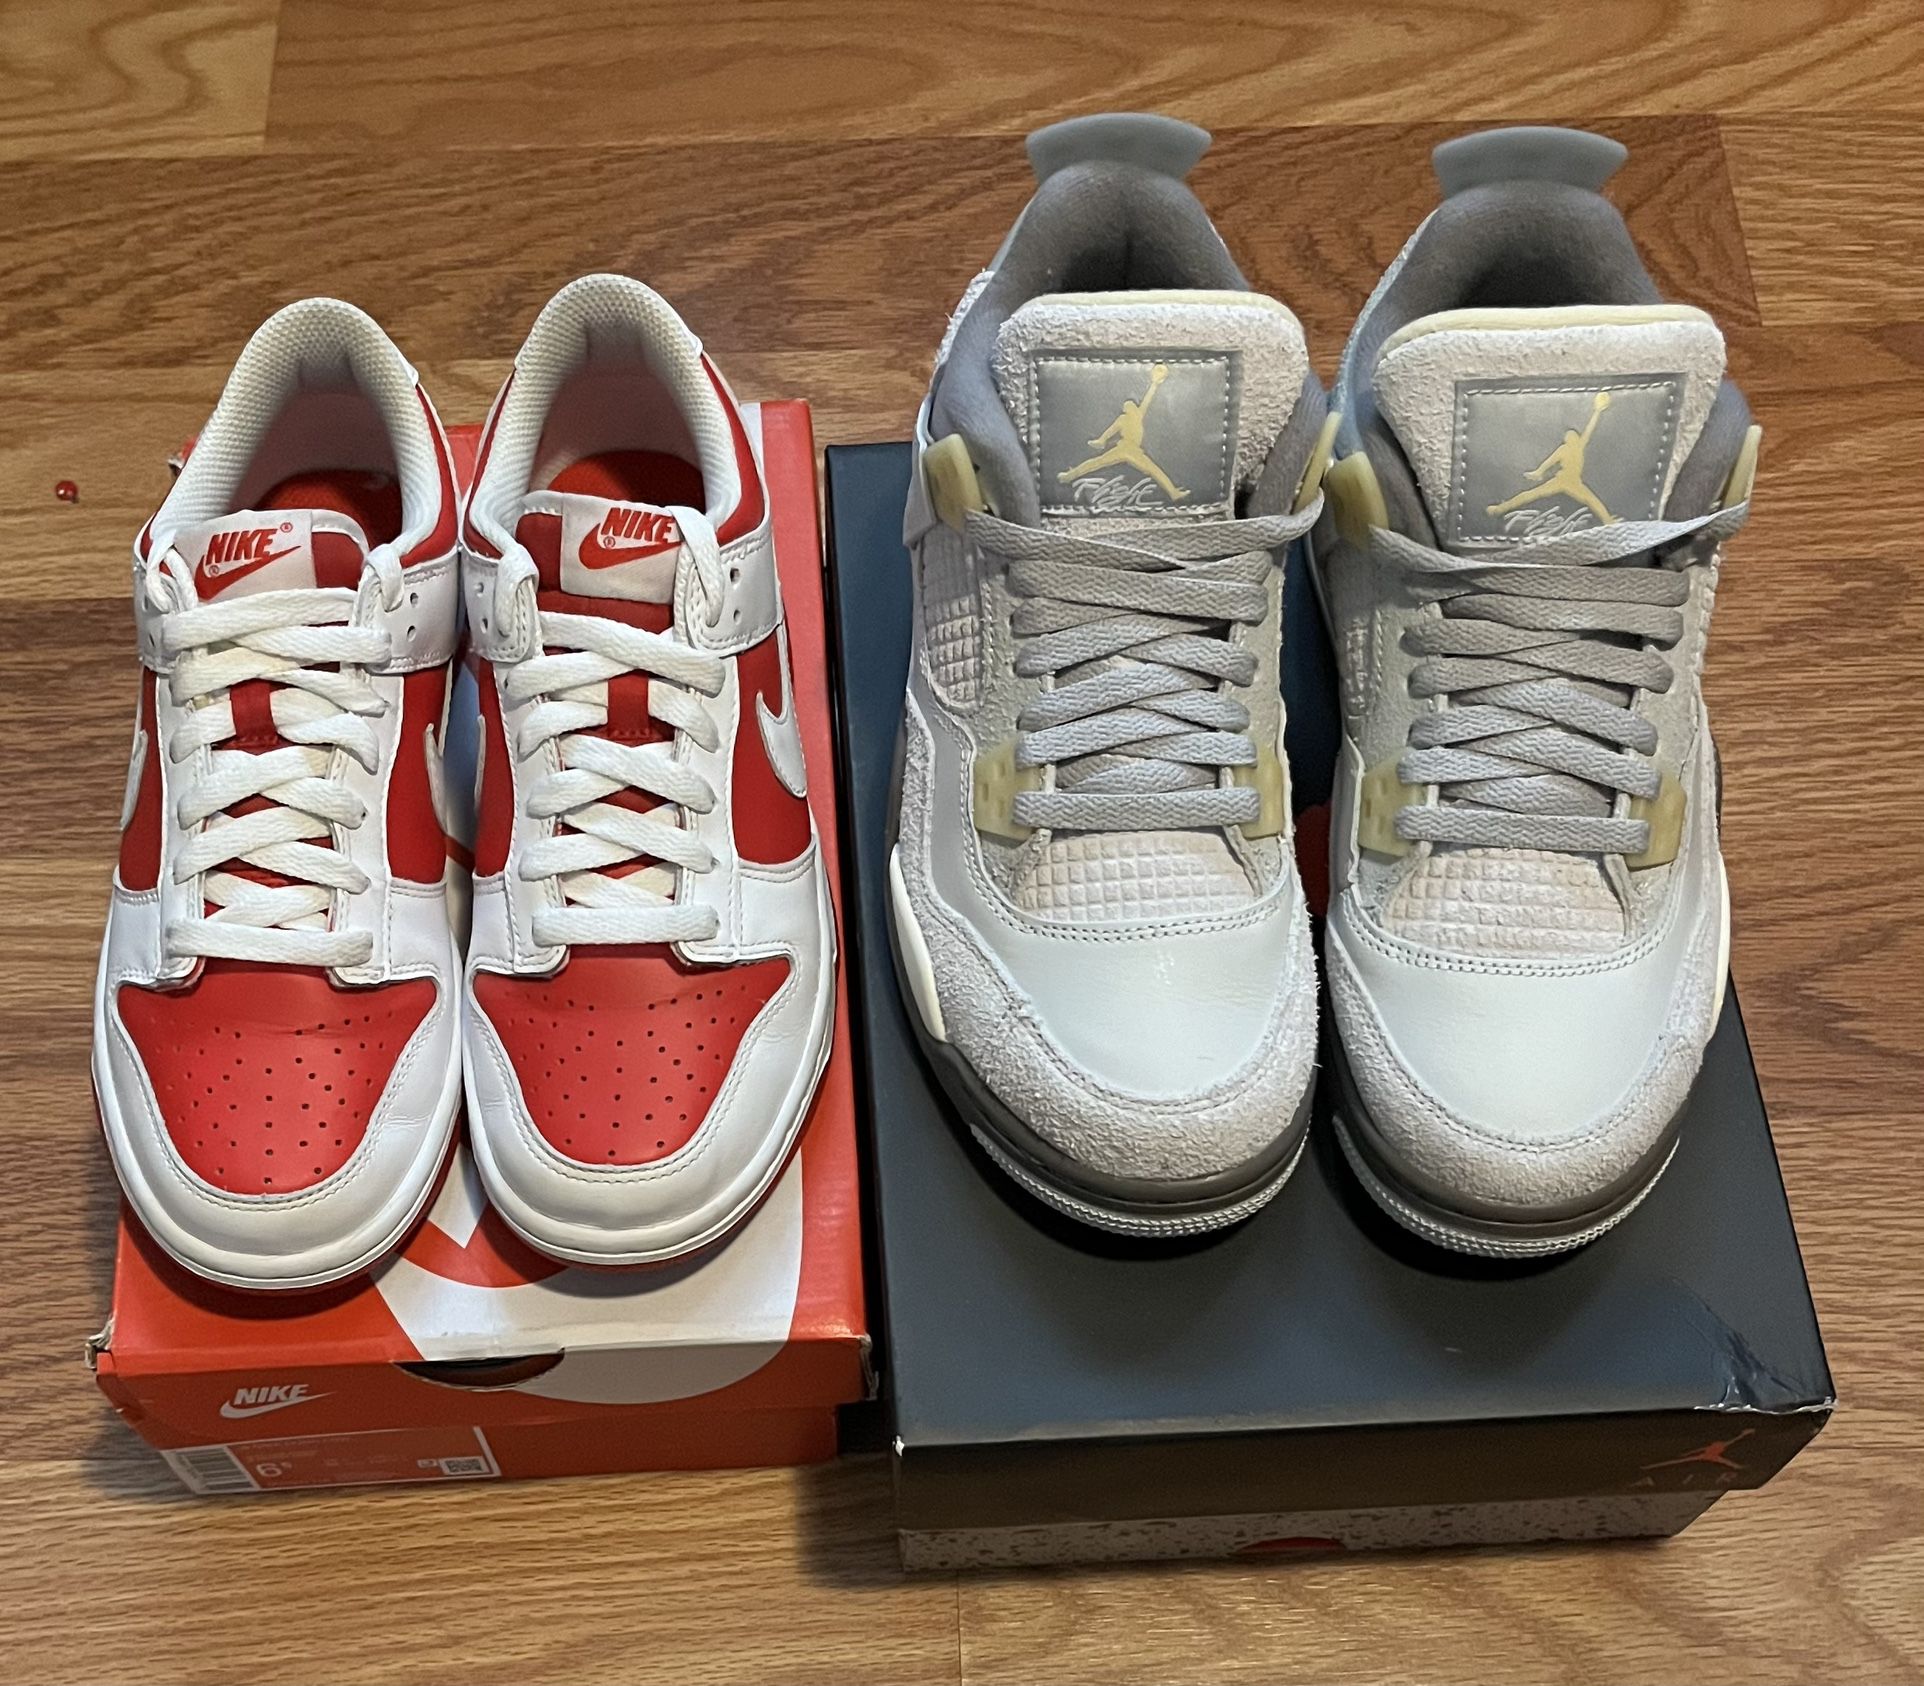 Jordan Nike Both Size 5 